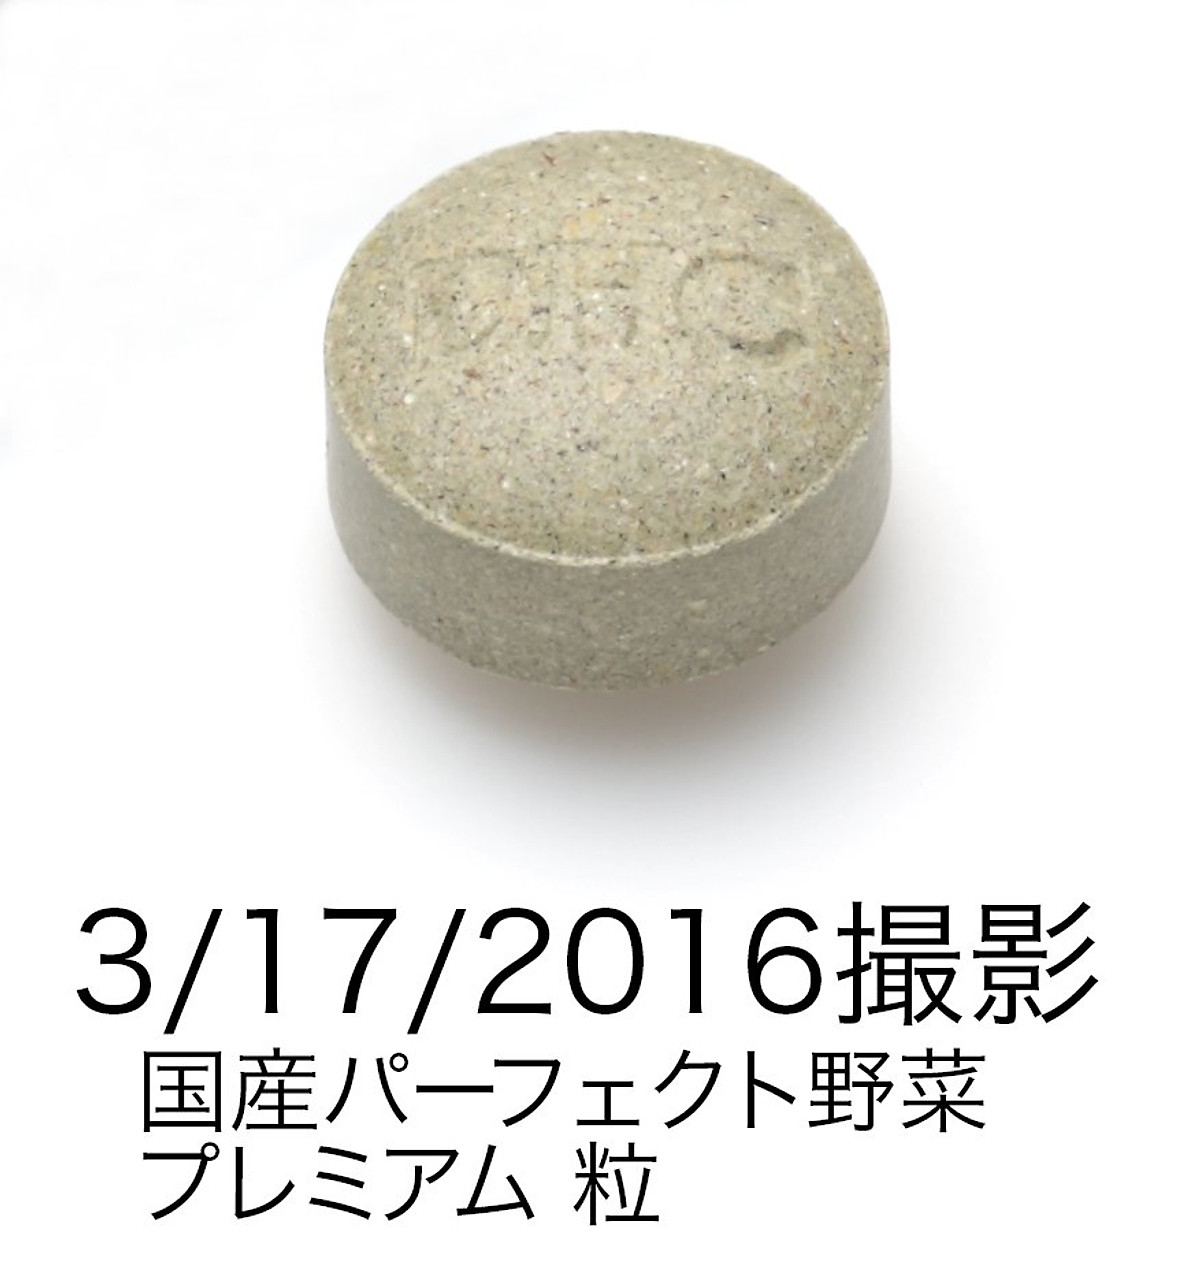 COMBO Viên Uống DHC Vitamin C - Rau Củ Nhật Bản Sáng Da, Giảm Nóng Trong 30 Ngày